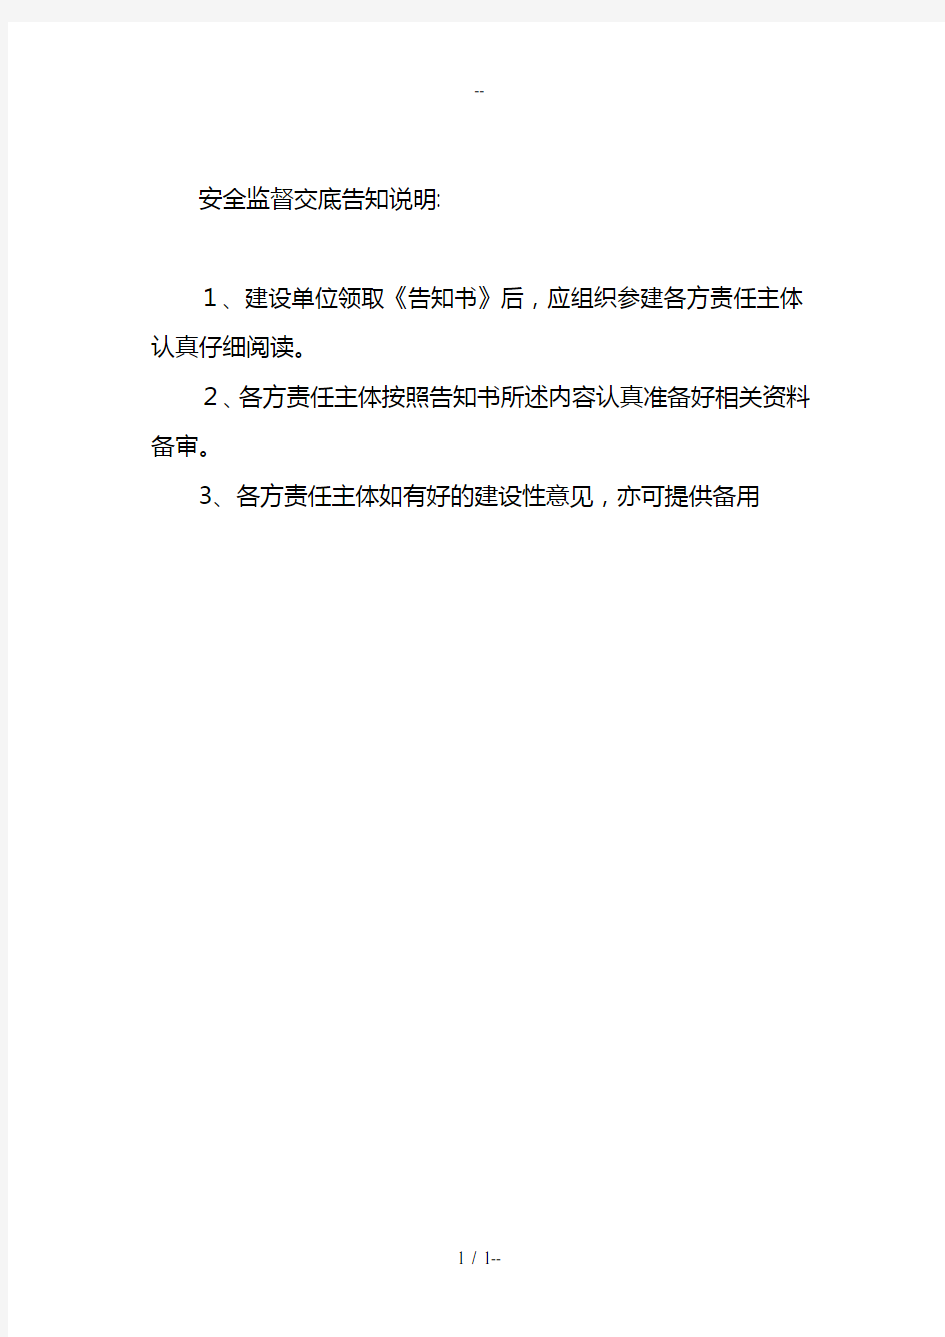 附表五贵州省建设工程施工安全监督交底告知书